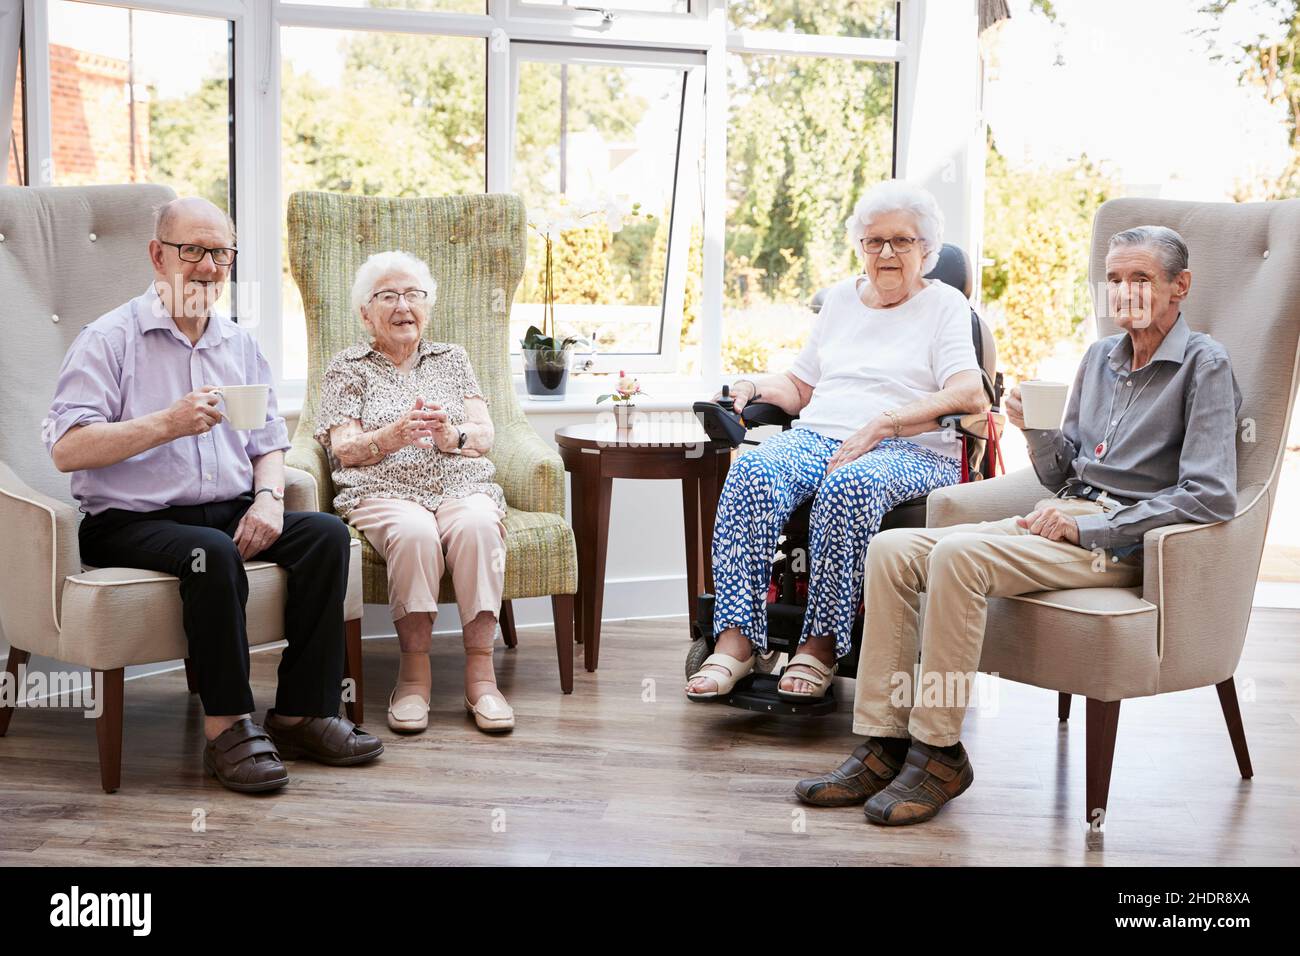 nursing home, retirement home, senior-wg, elderly care, nursing homes, retired, retirement homes Stock Photo